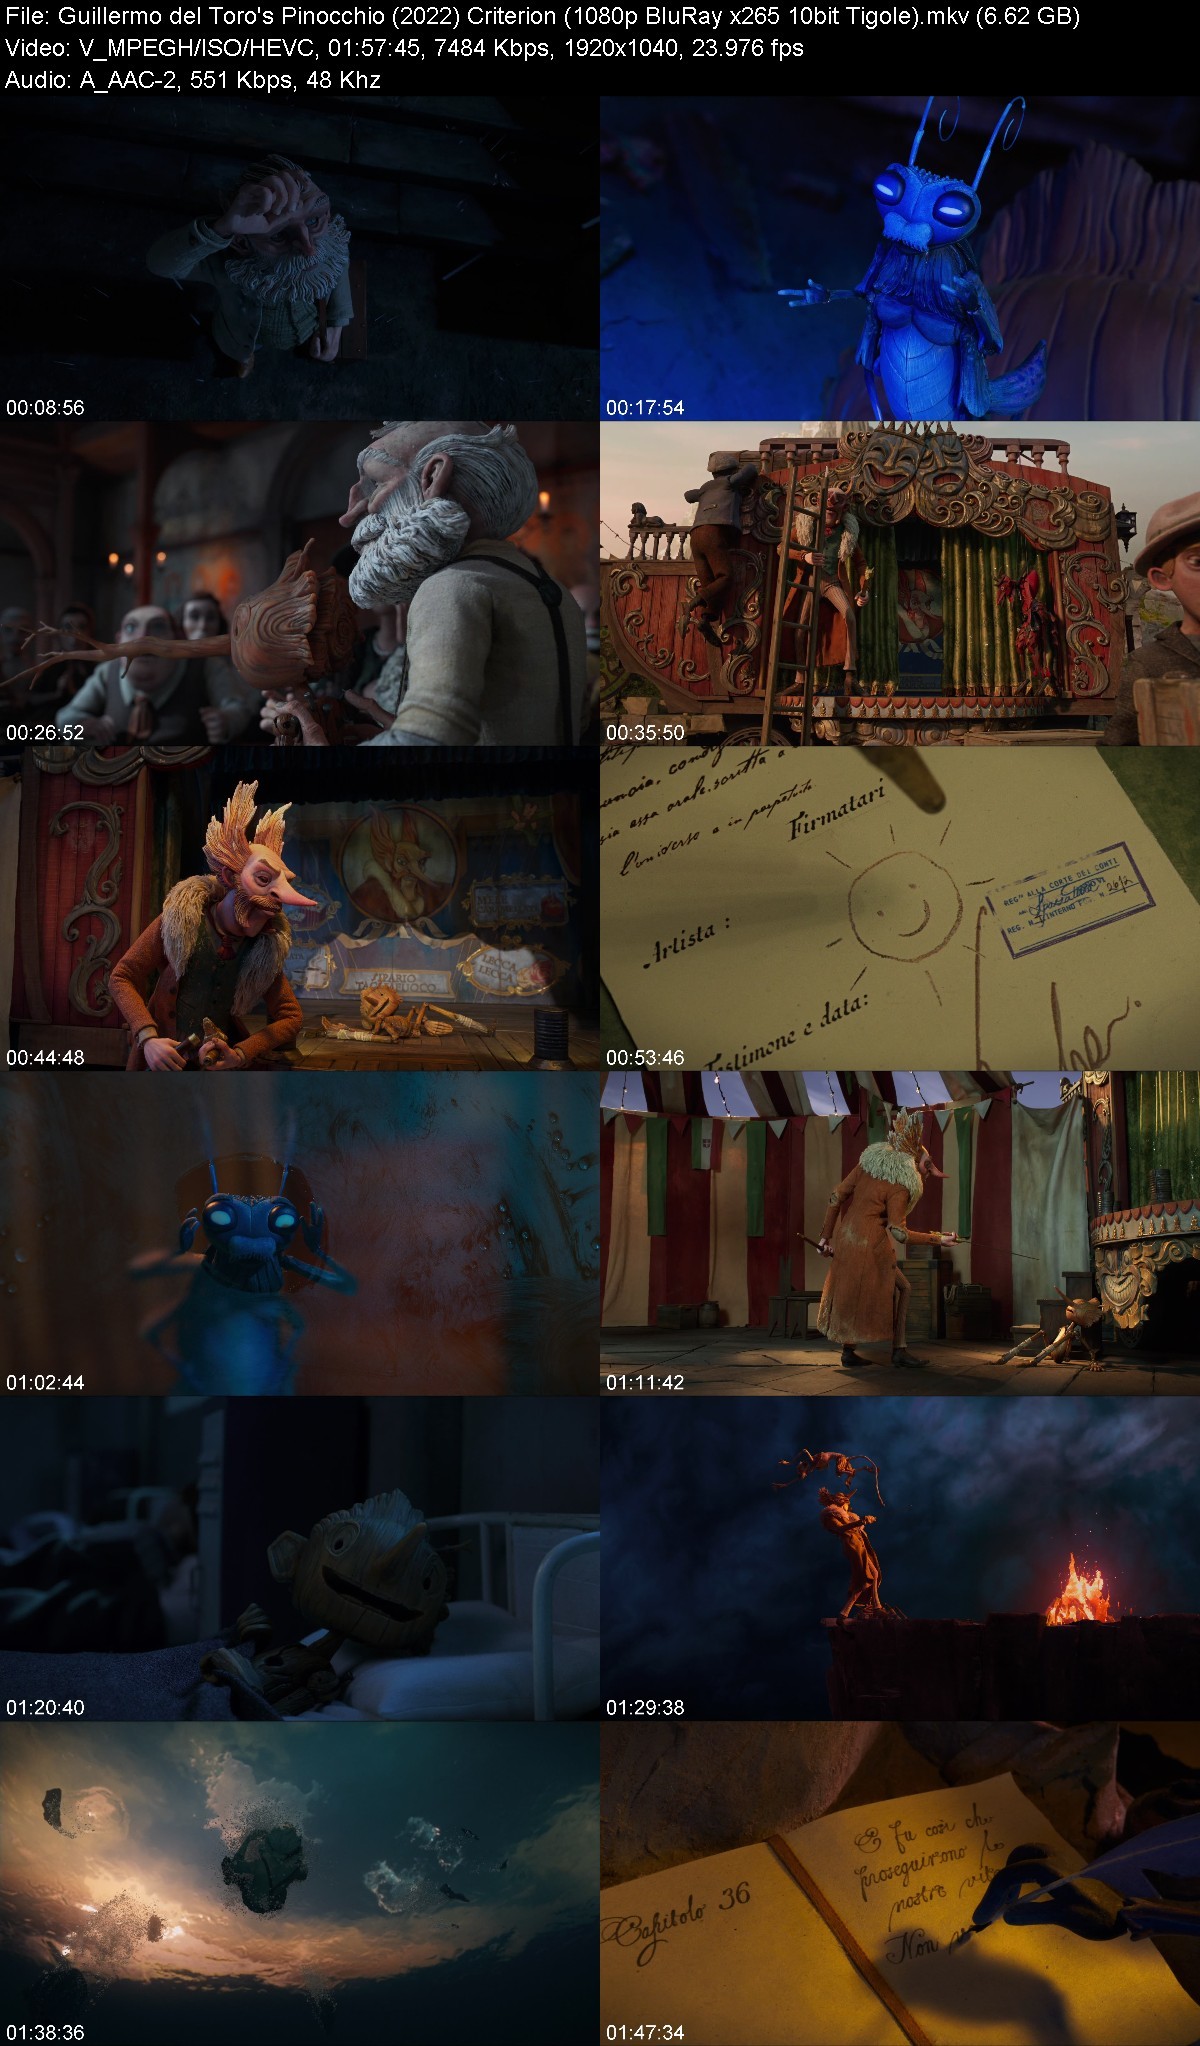 Guillermo del Toro's Pinocchio 2022 Criterion 1080p BluRay x265 HEVC 10bit AAC 7.1-Tigole [QxR]